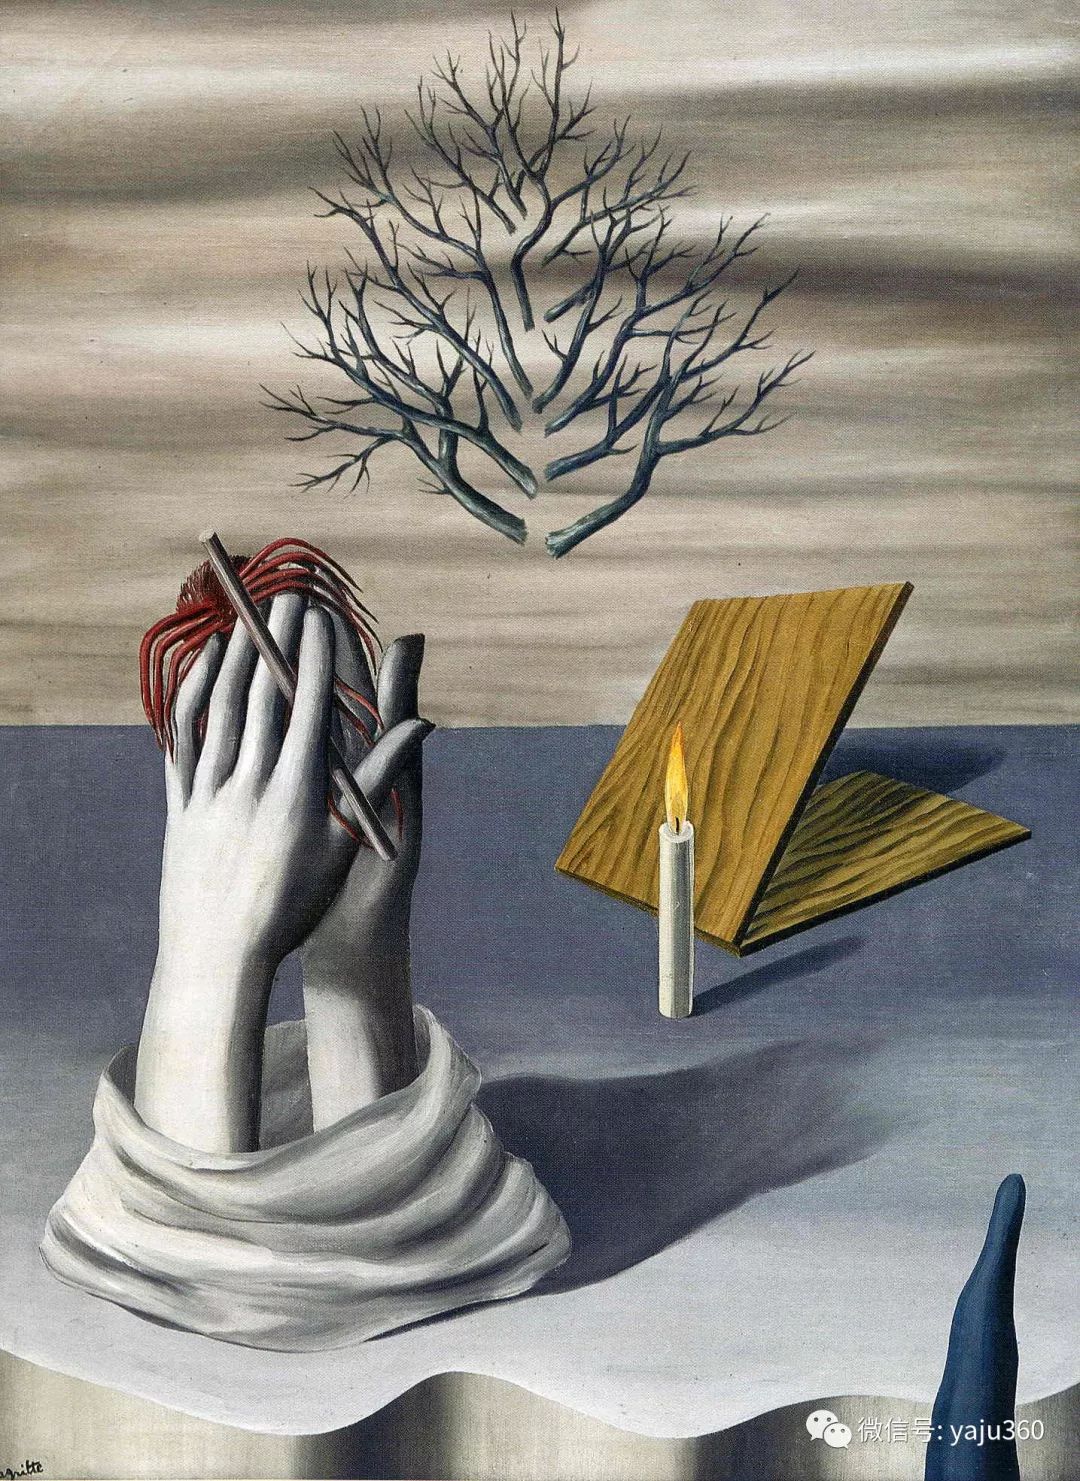 超现实主义 比利时画家rene magritte